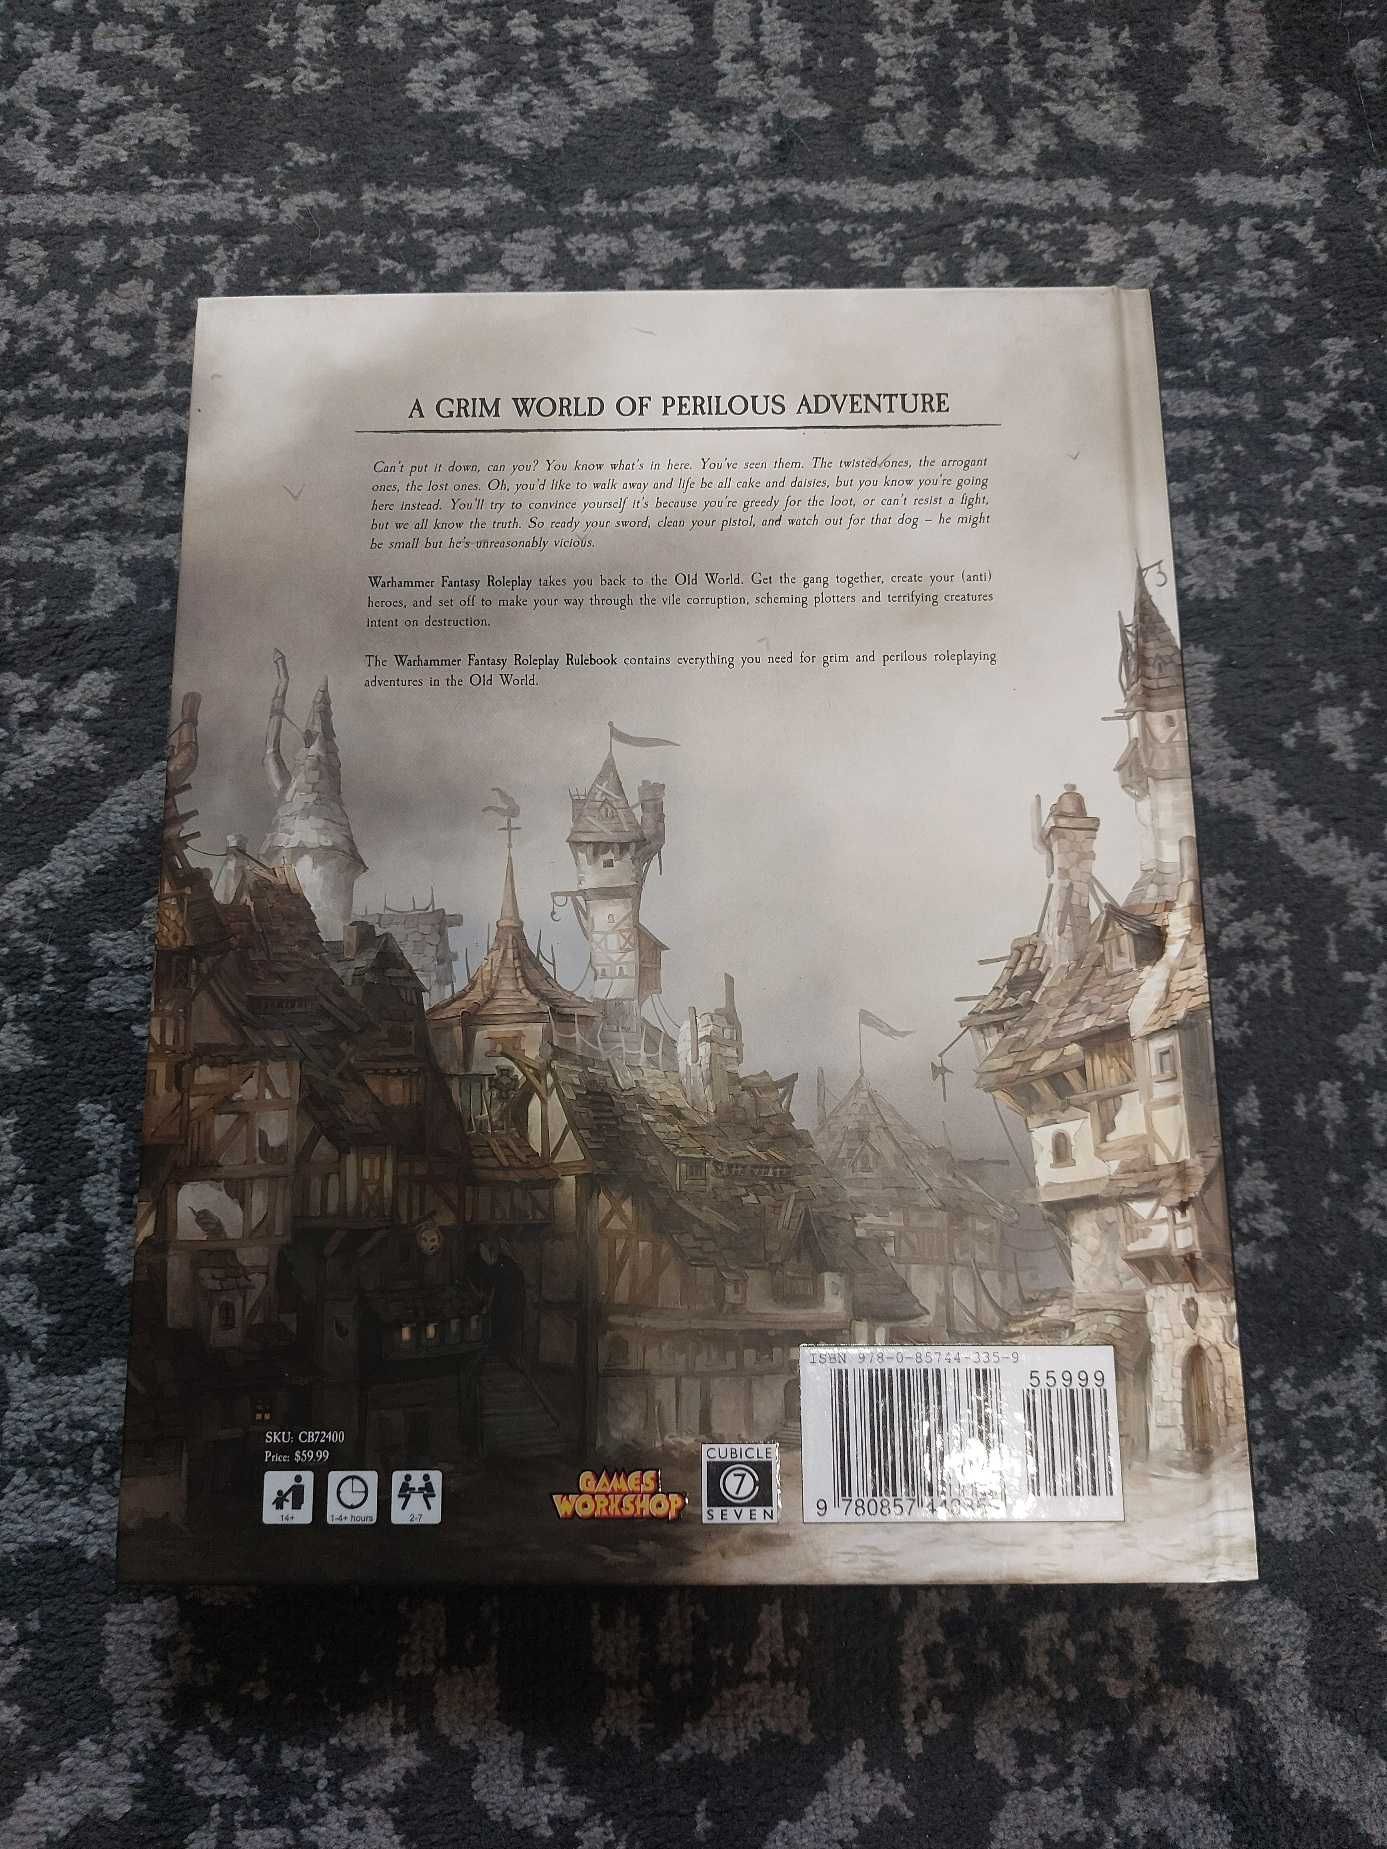 Warhammer Fantasy Role Play podręcznik 4 edycja